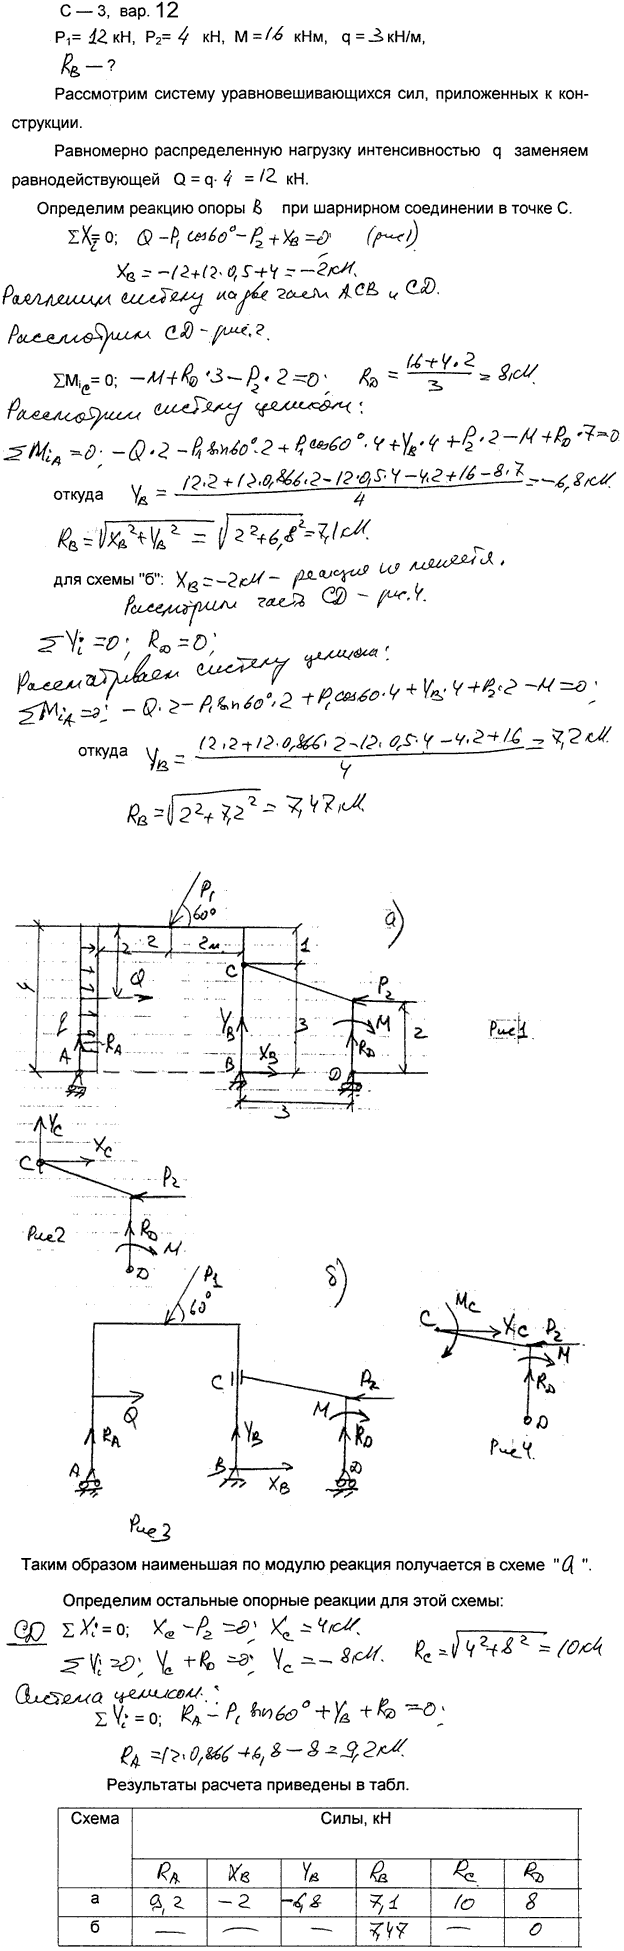 Яблонский задание С3..., Задача 14077, Теоретическая механика